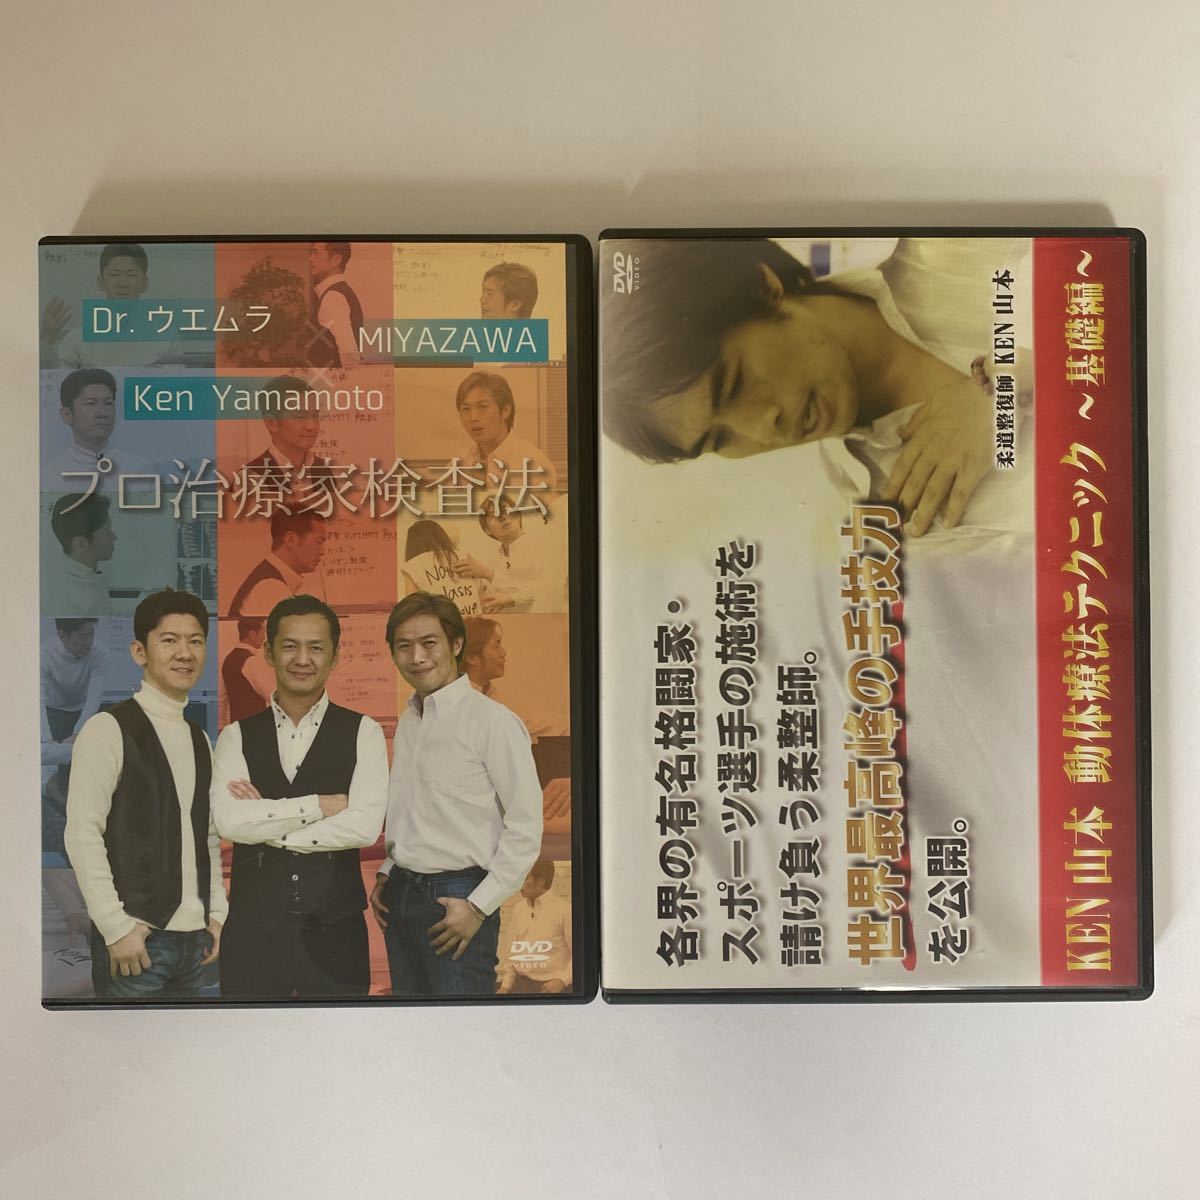 メーカー販売 整体DVD☆KEN YAMAMOTO TECHNIQUE LEVEL3 | umma.hu